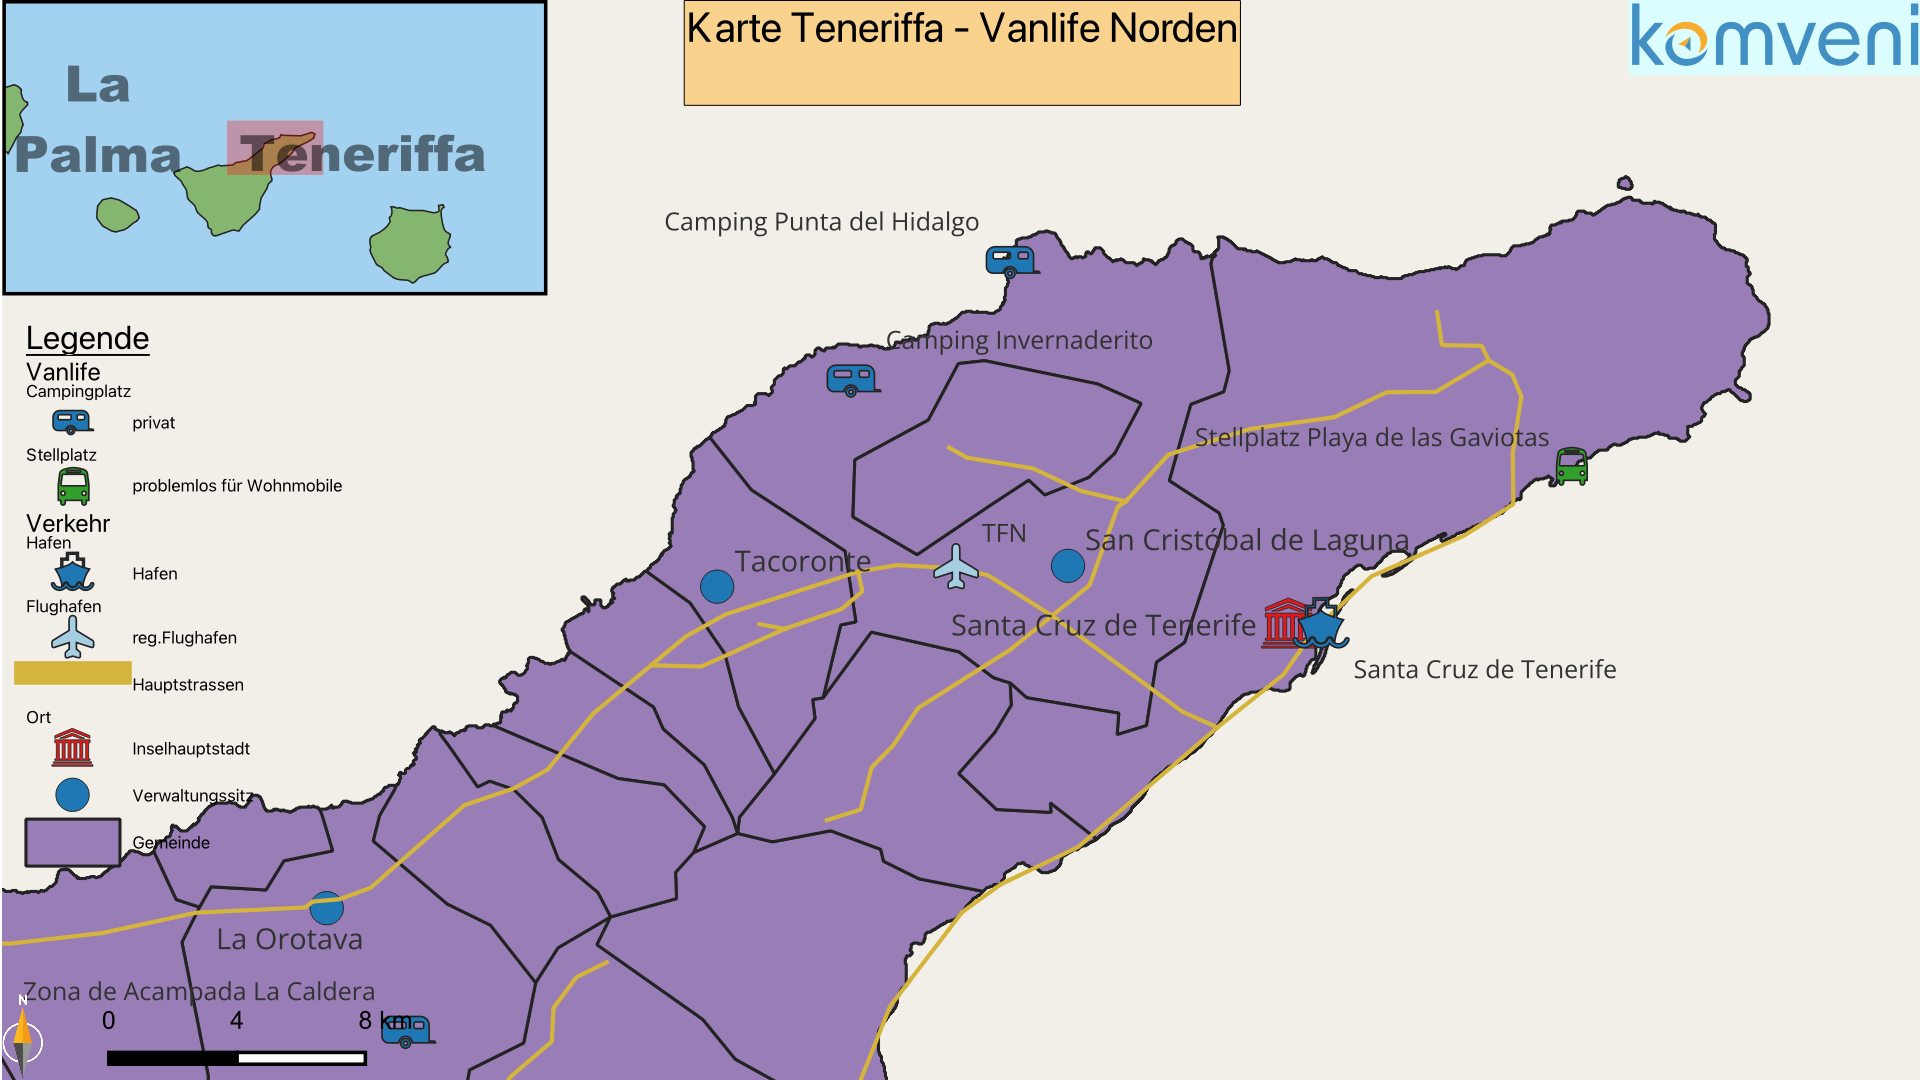 Karte Teneriffa Vanlife Norden